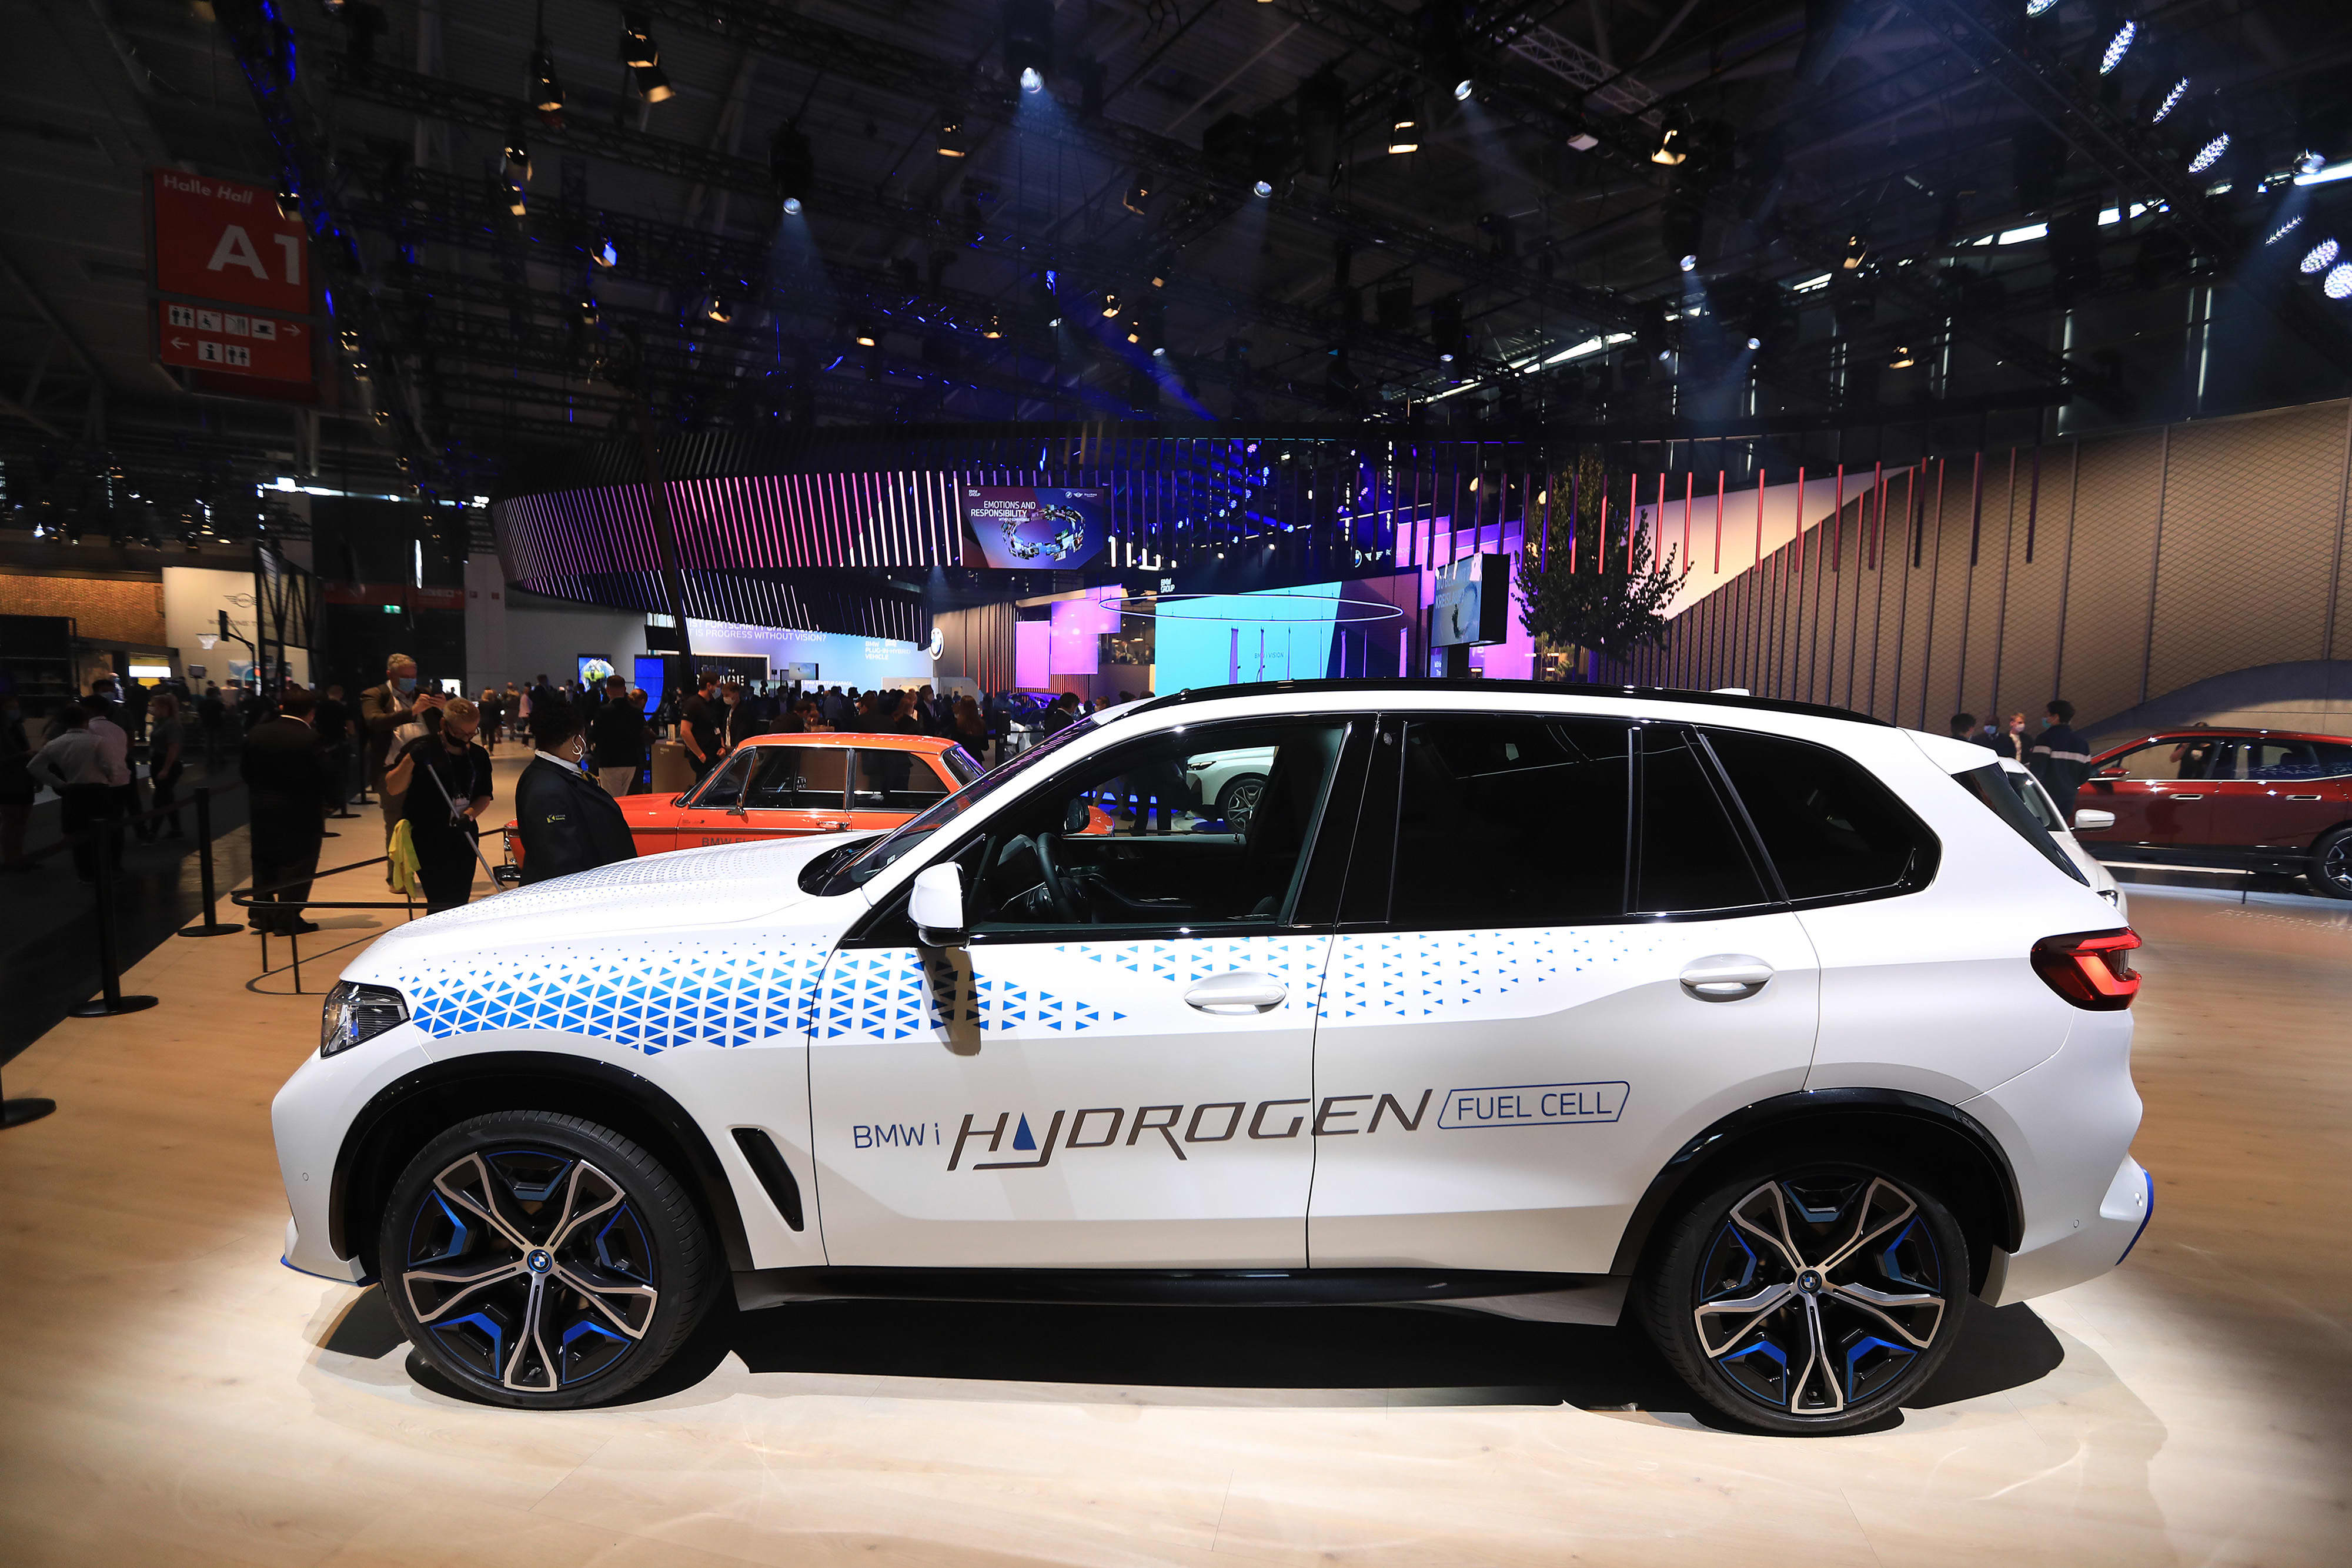 BMW از خودروی هیدروژنی رو نمایی می کند که از سلول های سوختی تویوتا استفاده می کنند